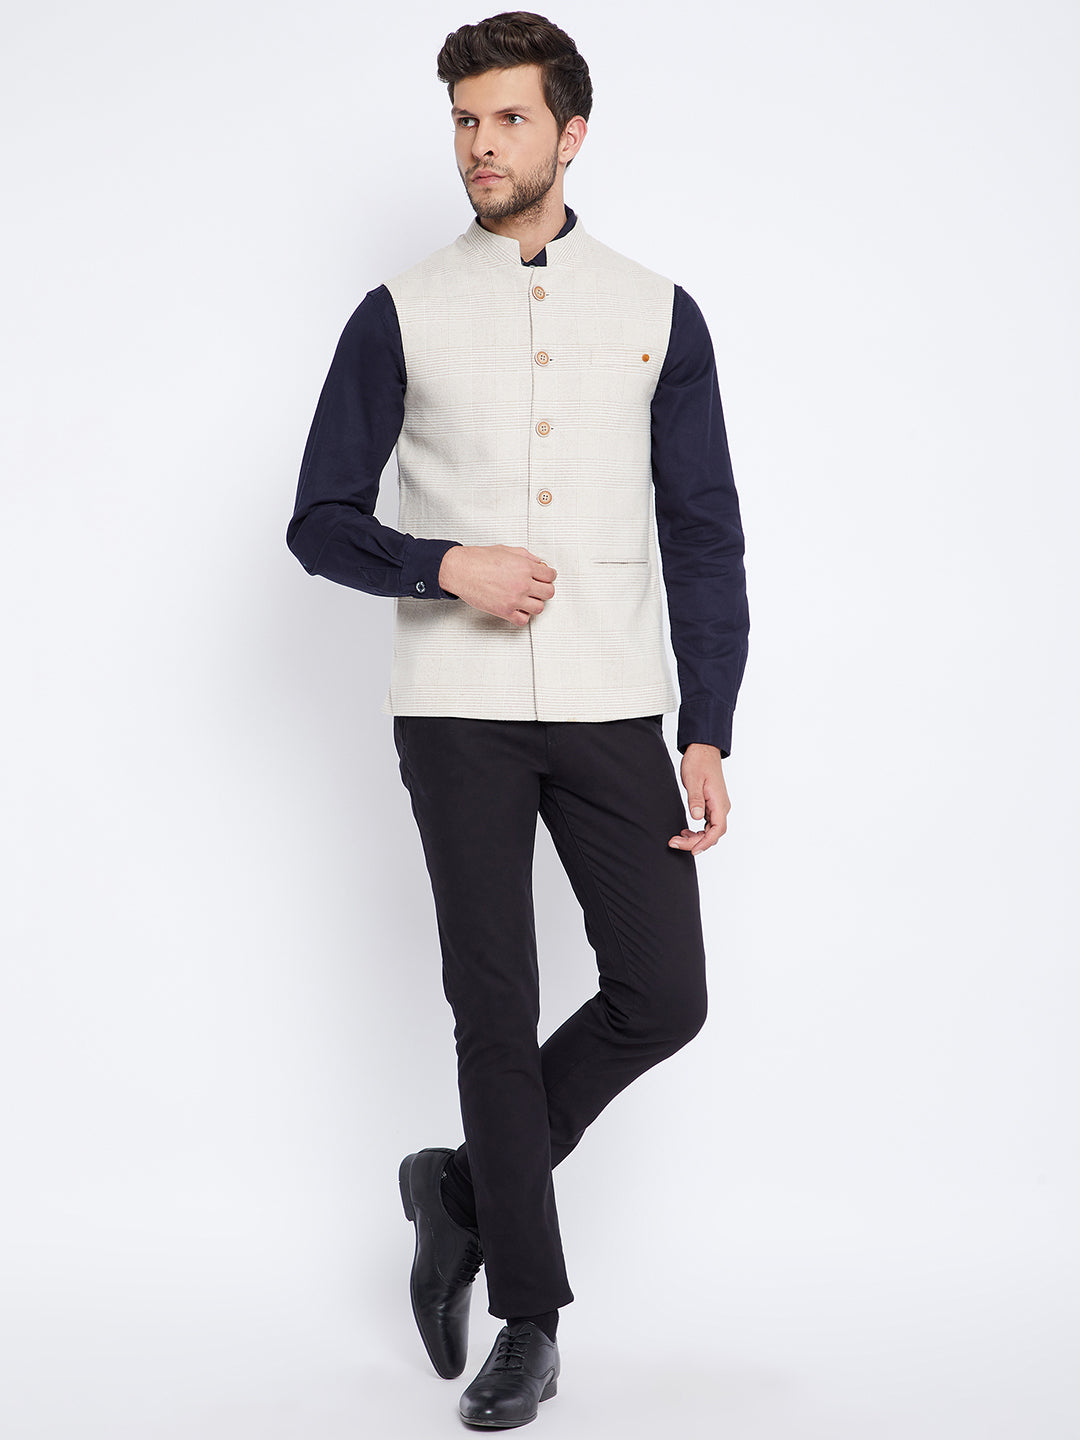 Beige Self Design Waistcoat - Men Waist Coat